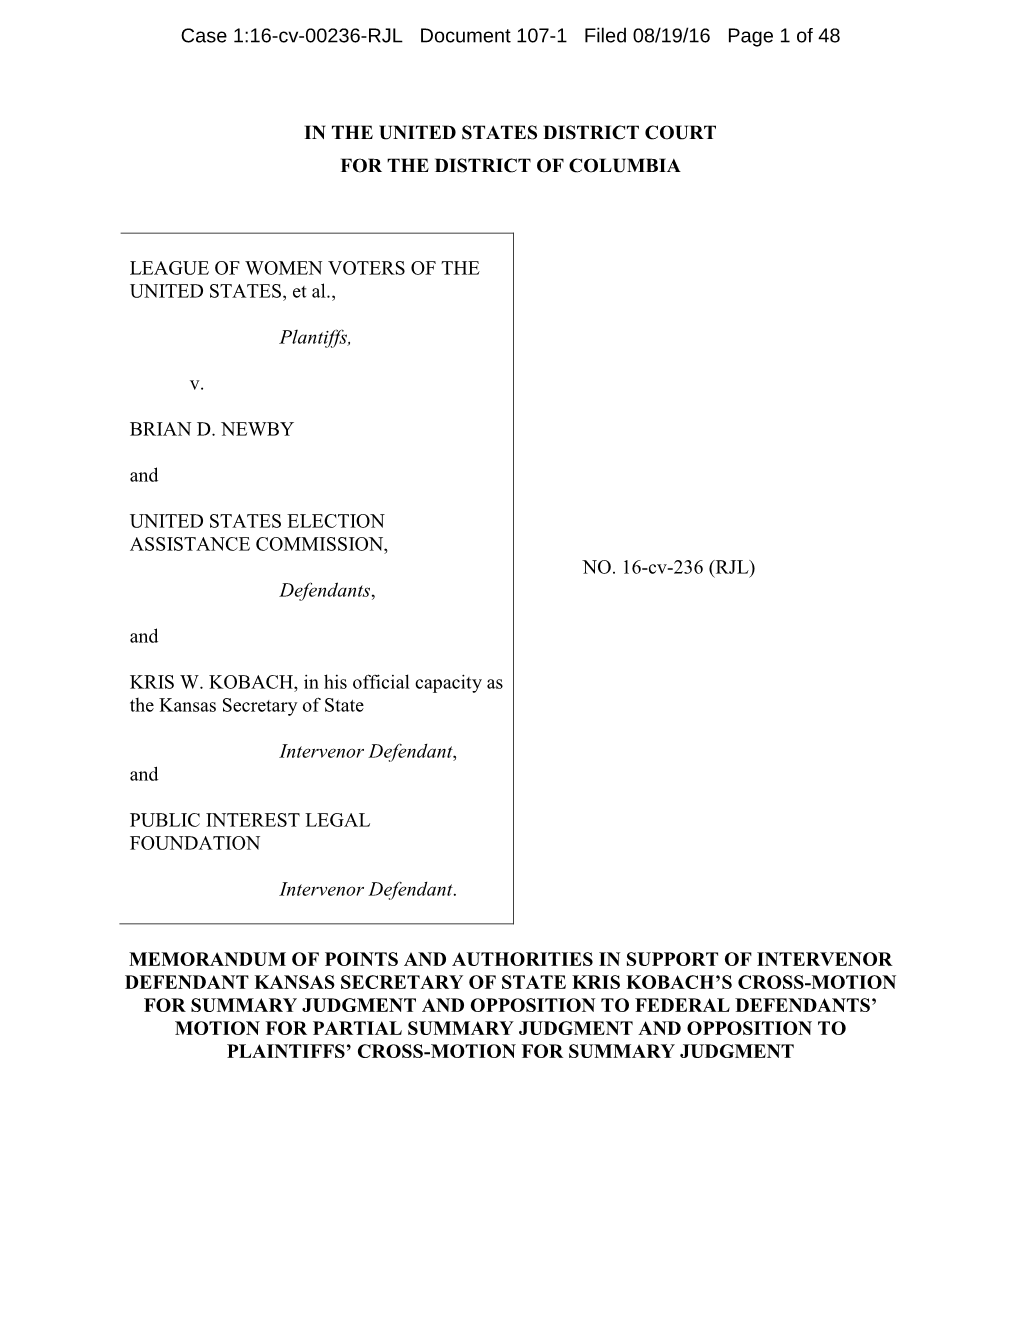 Memorandum in Support of Intervenor-Defendant Kansas Secretary of State Kris Kobach's Cross-Motion for Summary